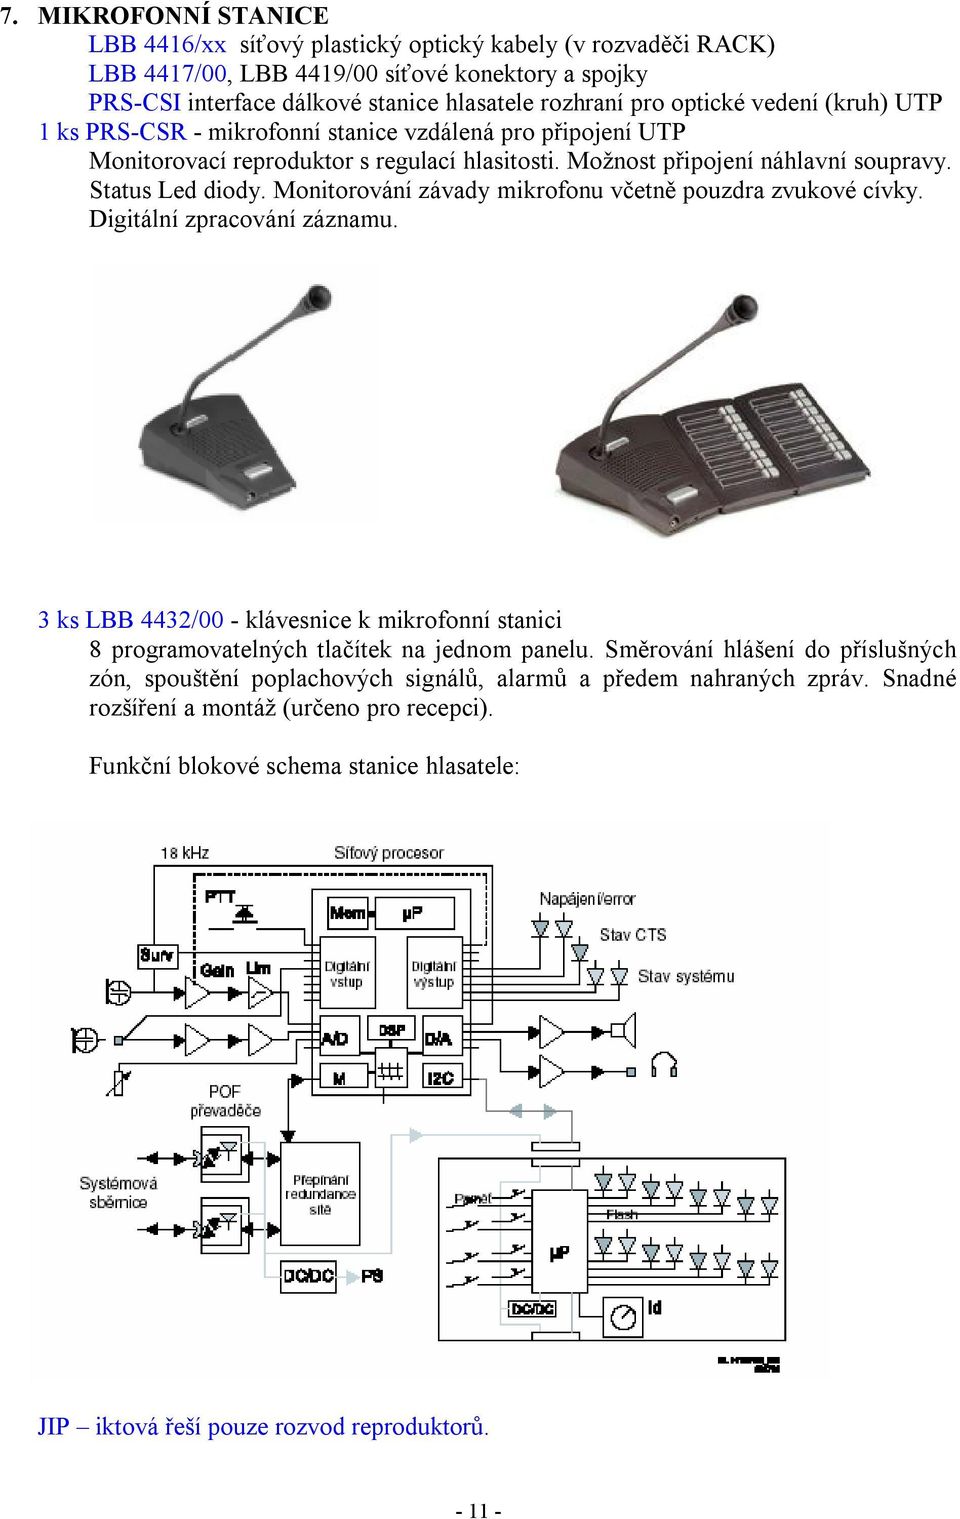 Monitorování závady mikrofonu včetně pouzdra zvukové cívky. Digitální zpracování záznamu. 3 ks LBB 4432/00 - klávesnice k mikrofonní stanici 8 programovatelných tlačítek na jednom panelu.